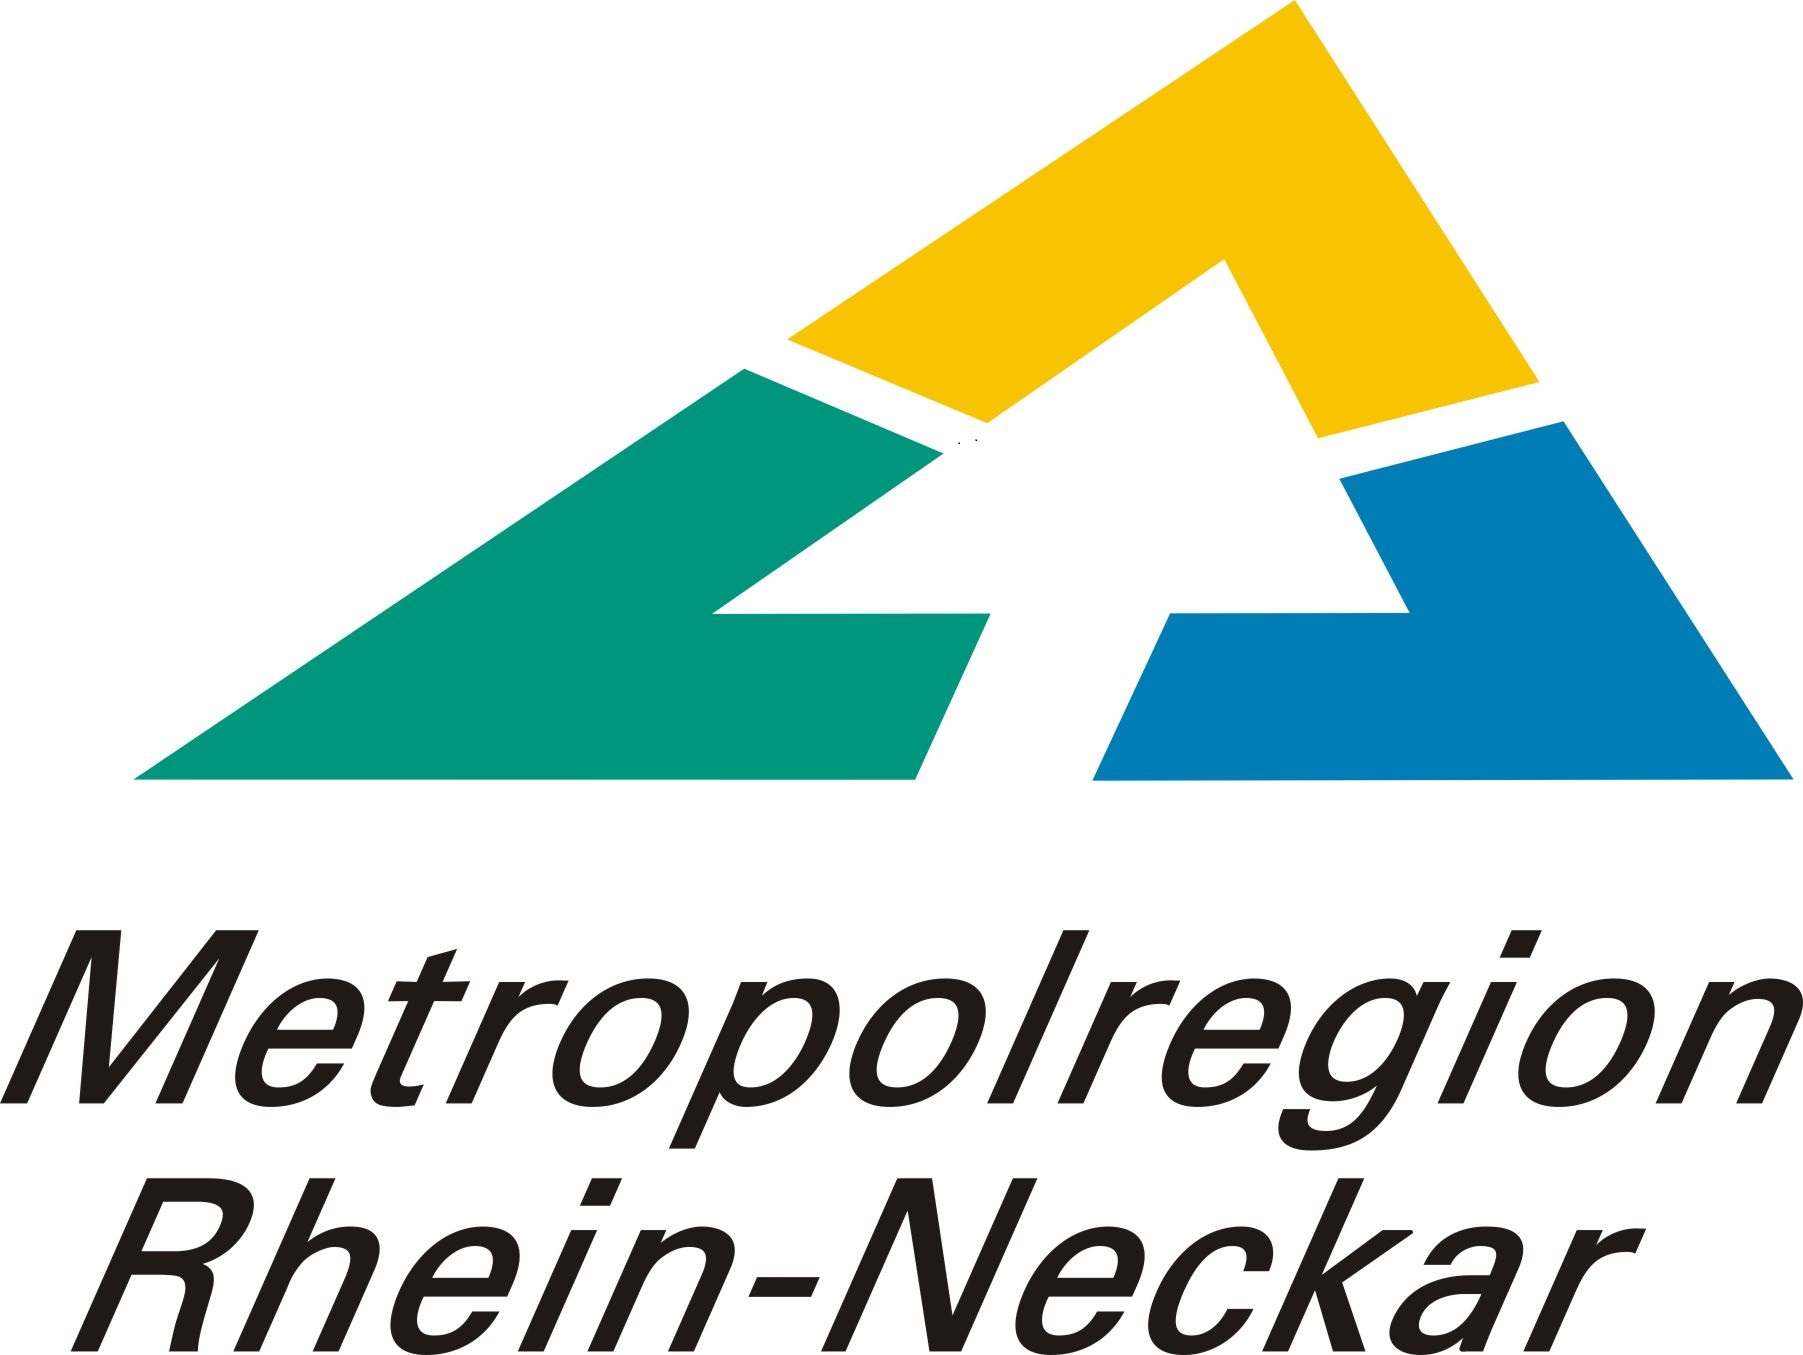 Mit einem Klick auf das Logo erhalten Sie weitere Informationen auf den Internetseiten der Metropolregion Rhein-Neckar.